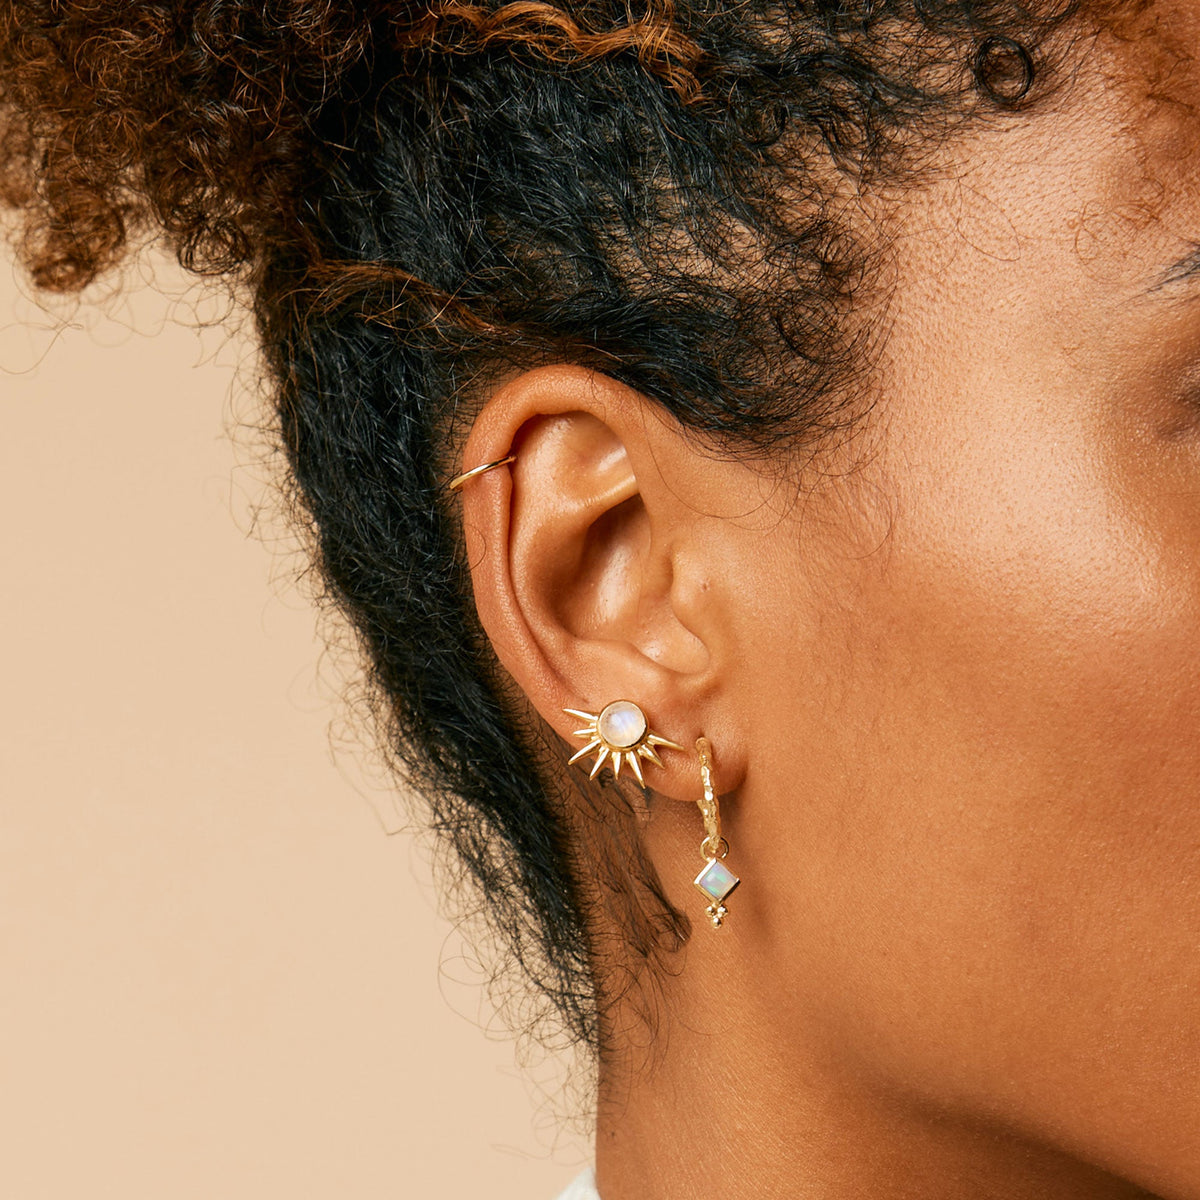 Divinity Princess Hoop Earrings - Gold Opal